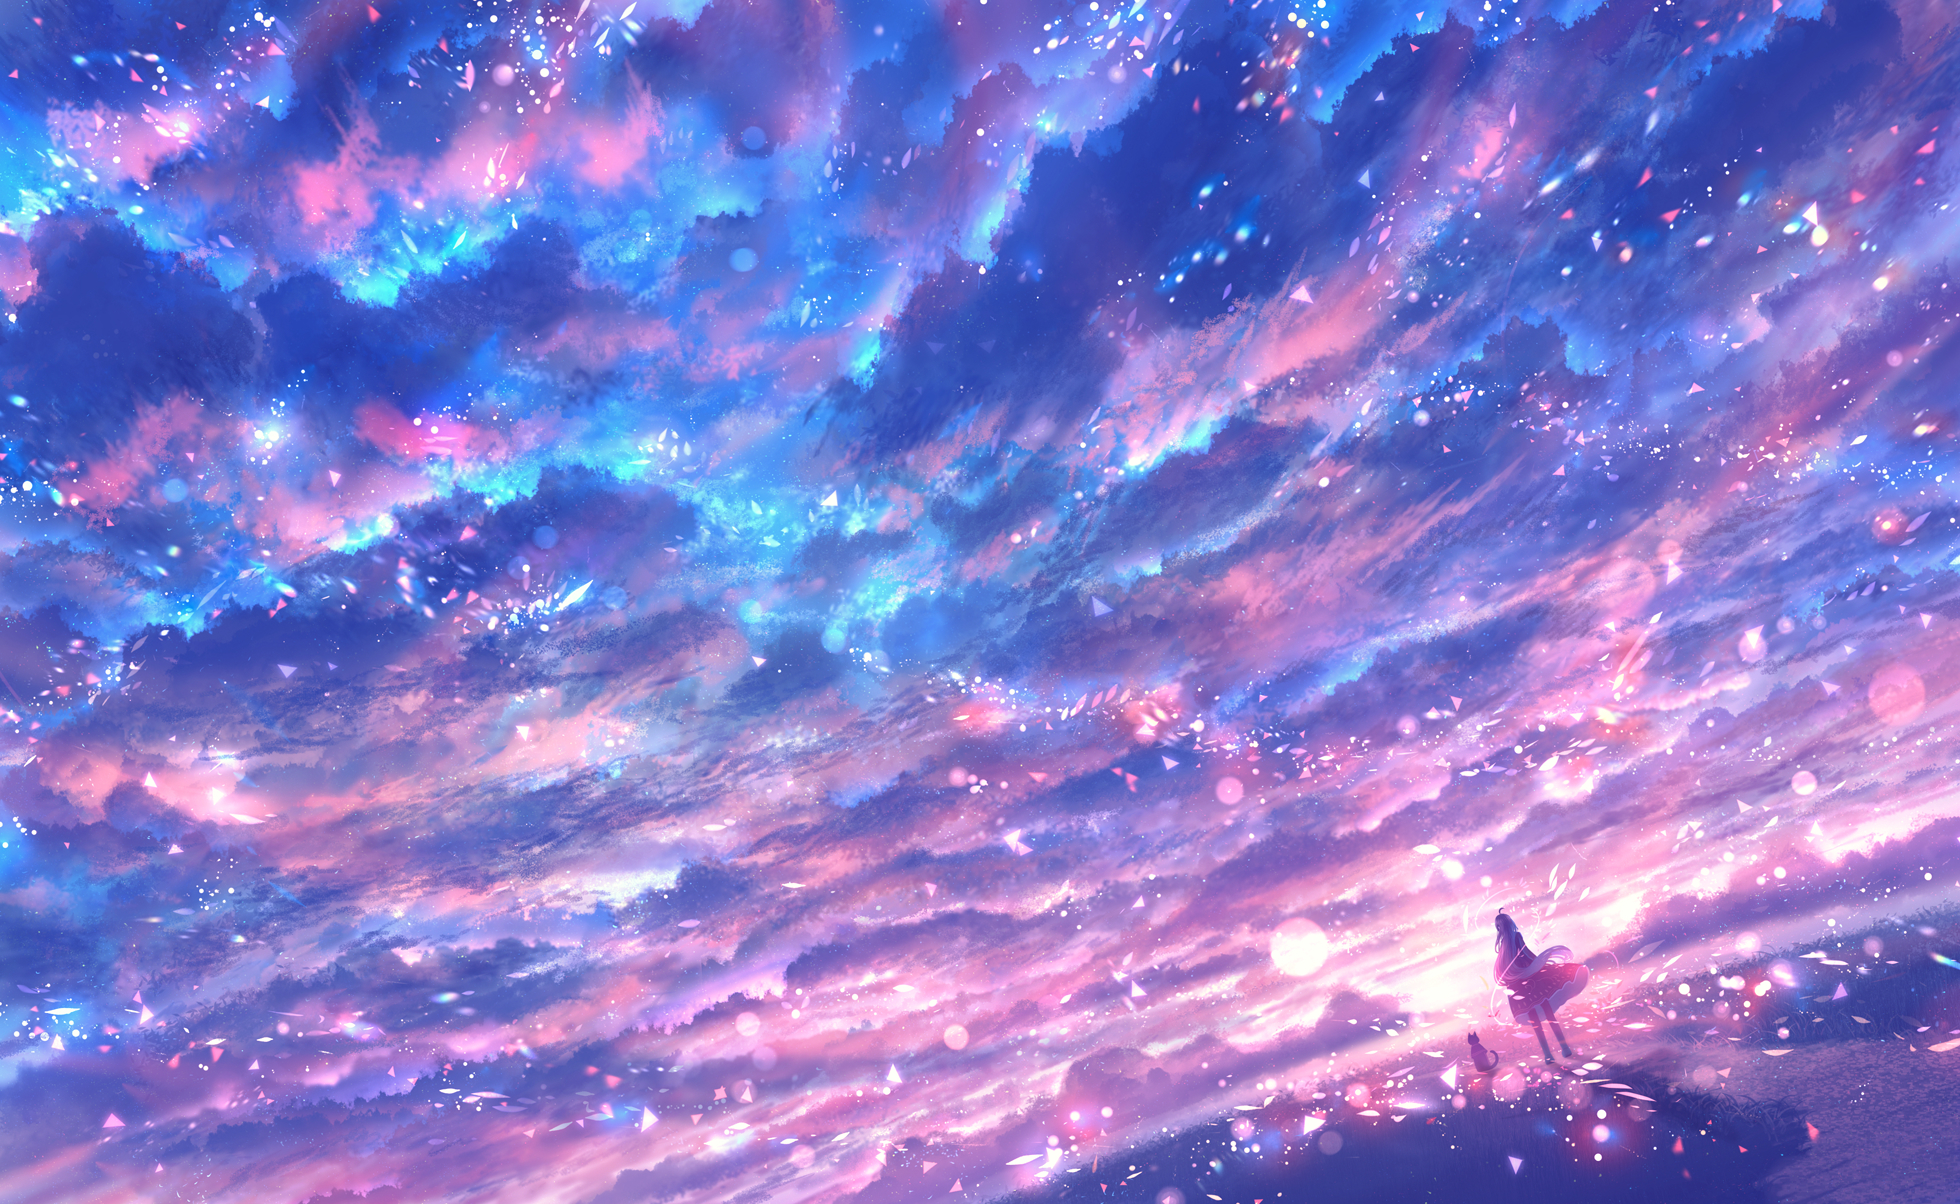 Tận hưởng vẻ đẹp của bầu trời qua bức ảnh Anime Sky HD Wallpaper. Với những nét vẽ tinh tế, bạn sẽ cảm thấy như mình đang đứng trên một nóc nhà vàng vào một ngày đẹp trời.